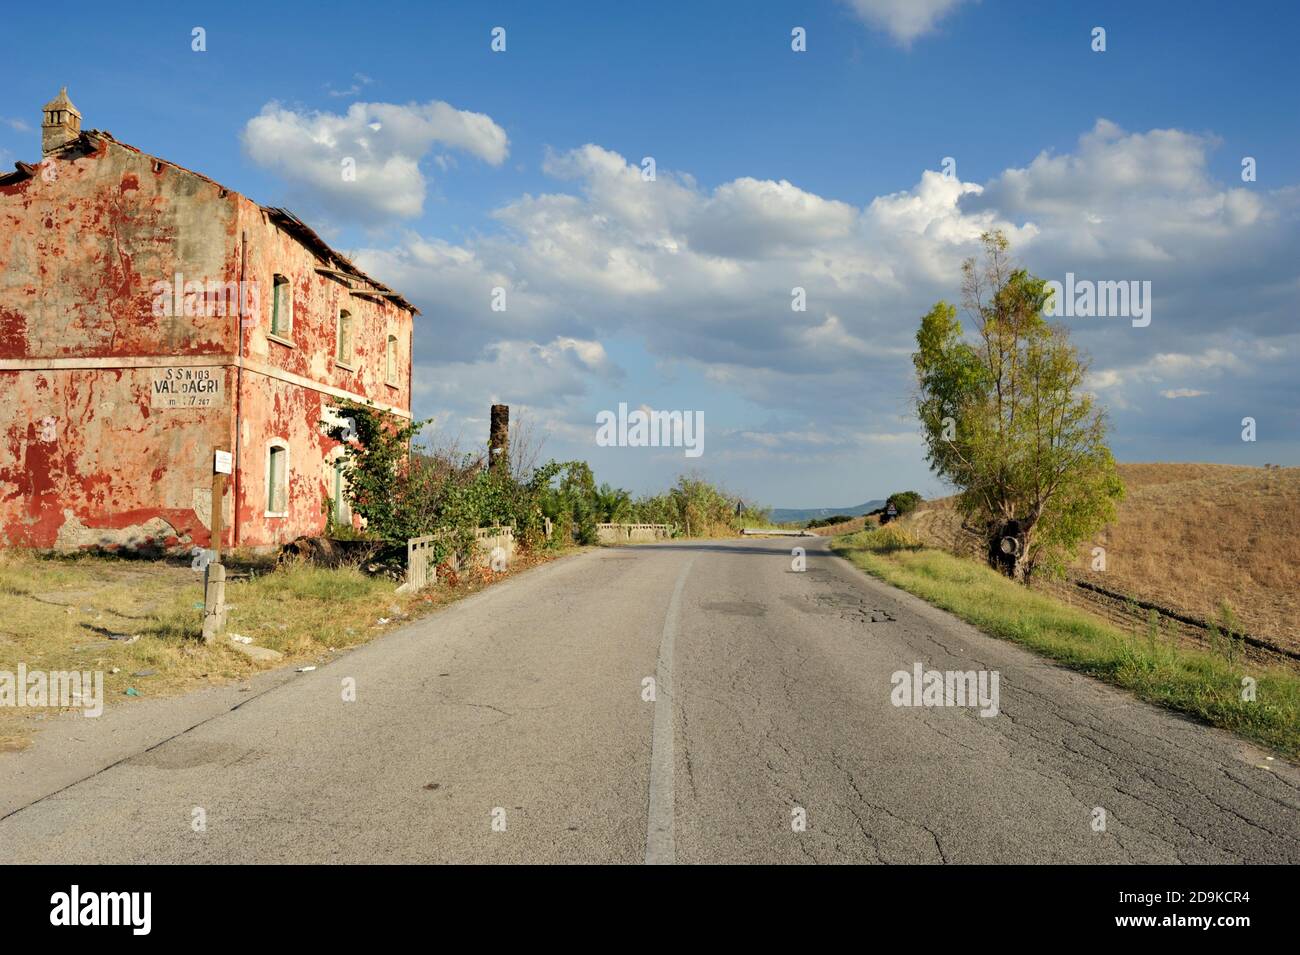 Italia, Basilicata, strada statale 103, casa cantoniera, casa di campagna abbandonata Foto Stock